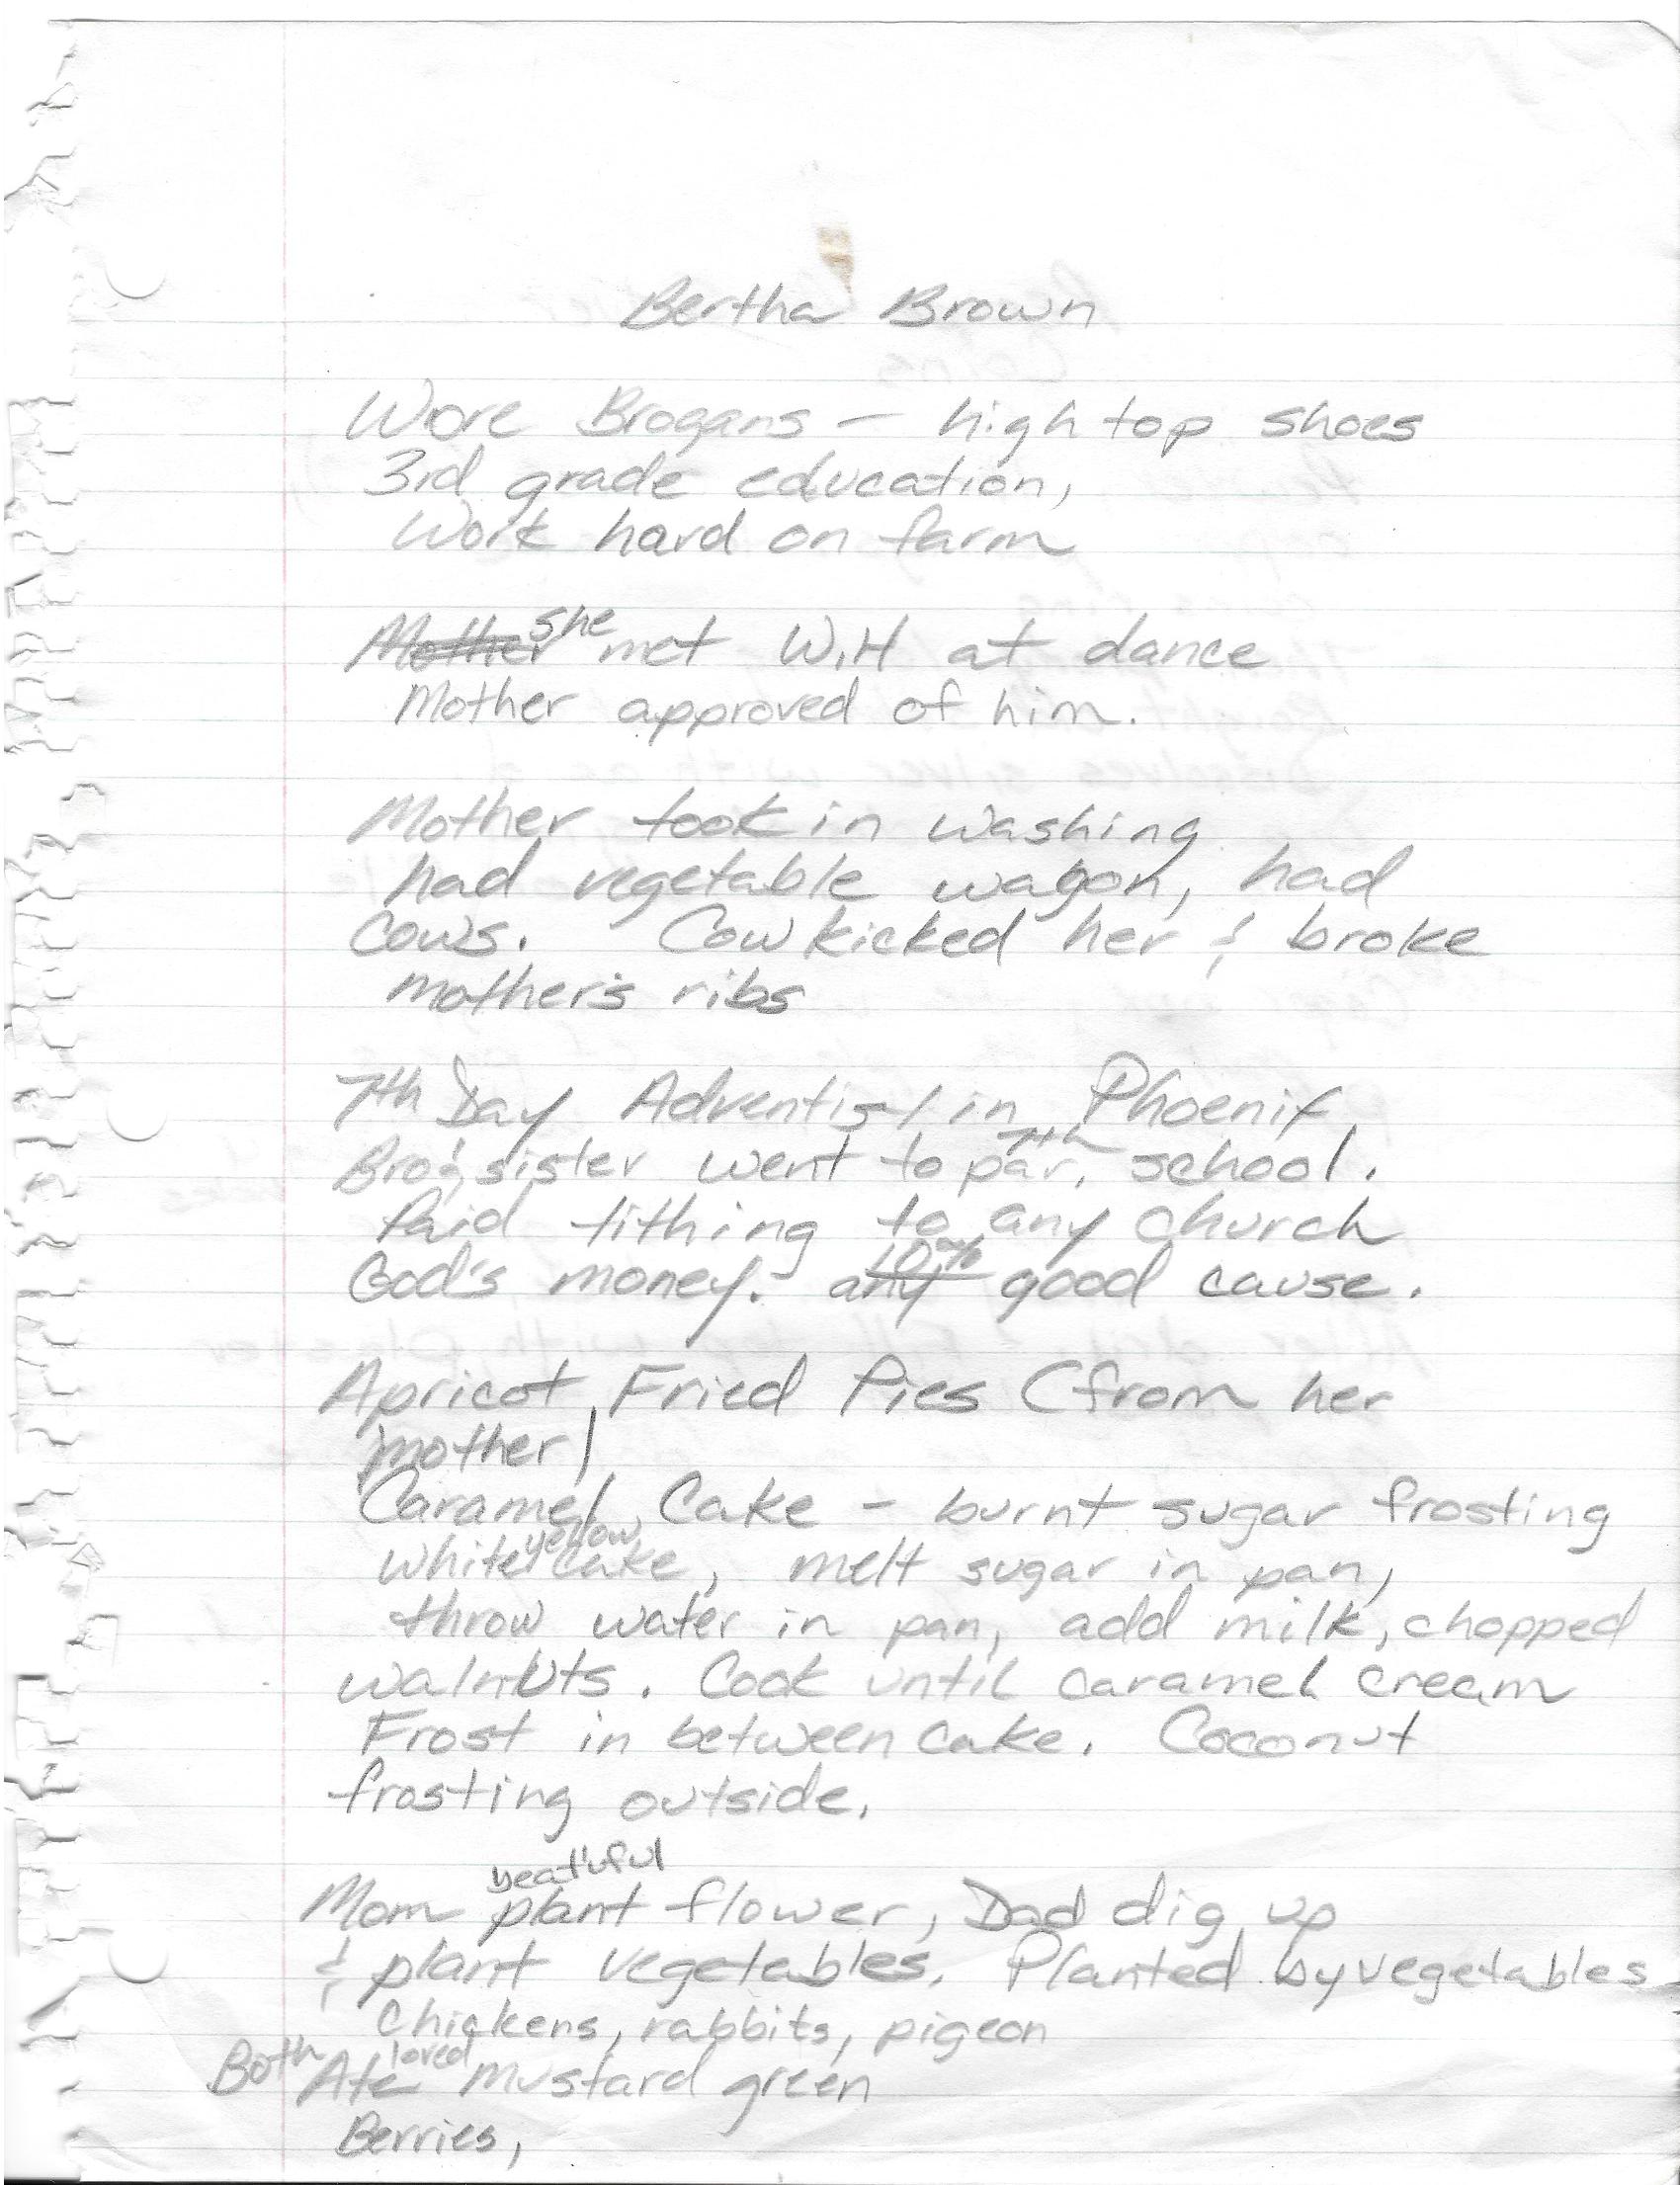 Handwritten notes about Bertha Brown